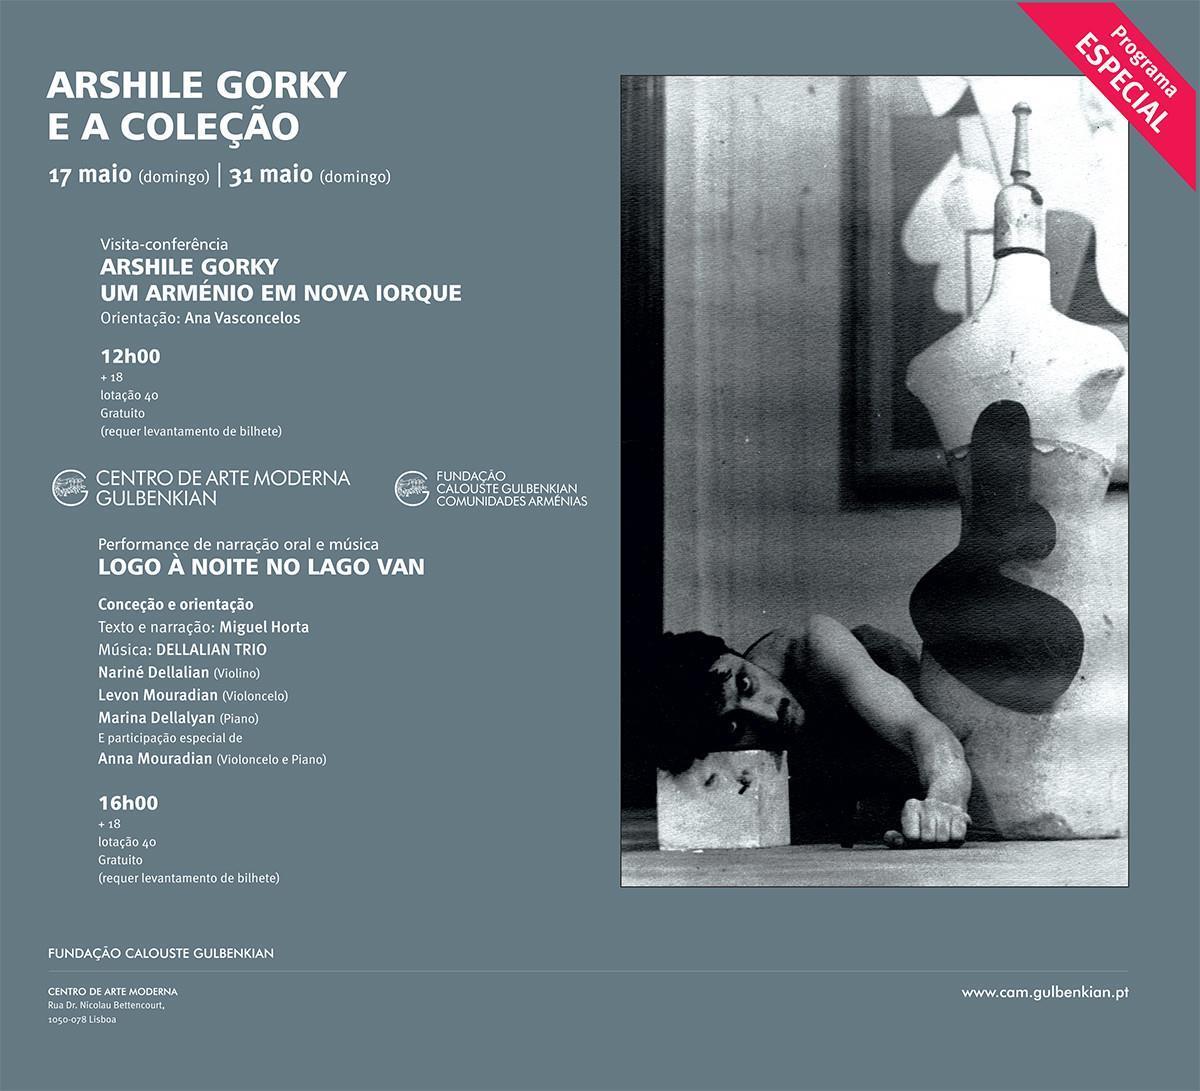 Arshile Gorky e a Coleção [visita-conferência e performance de narração oral e música]